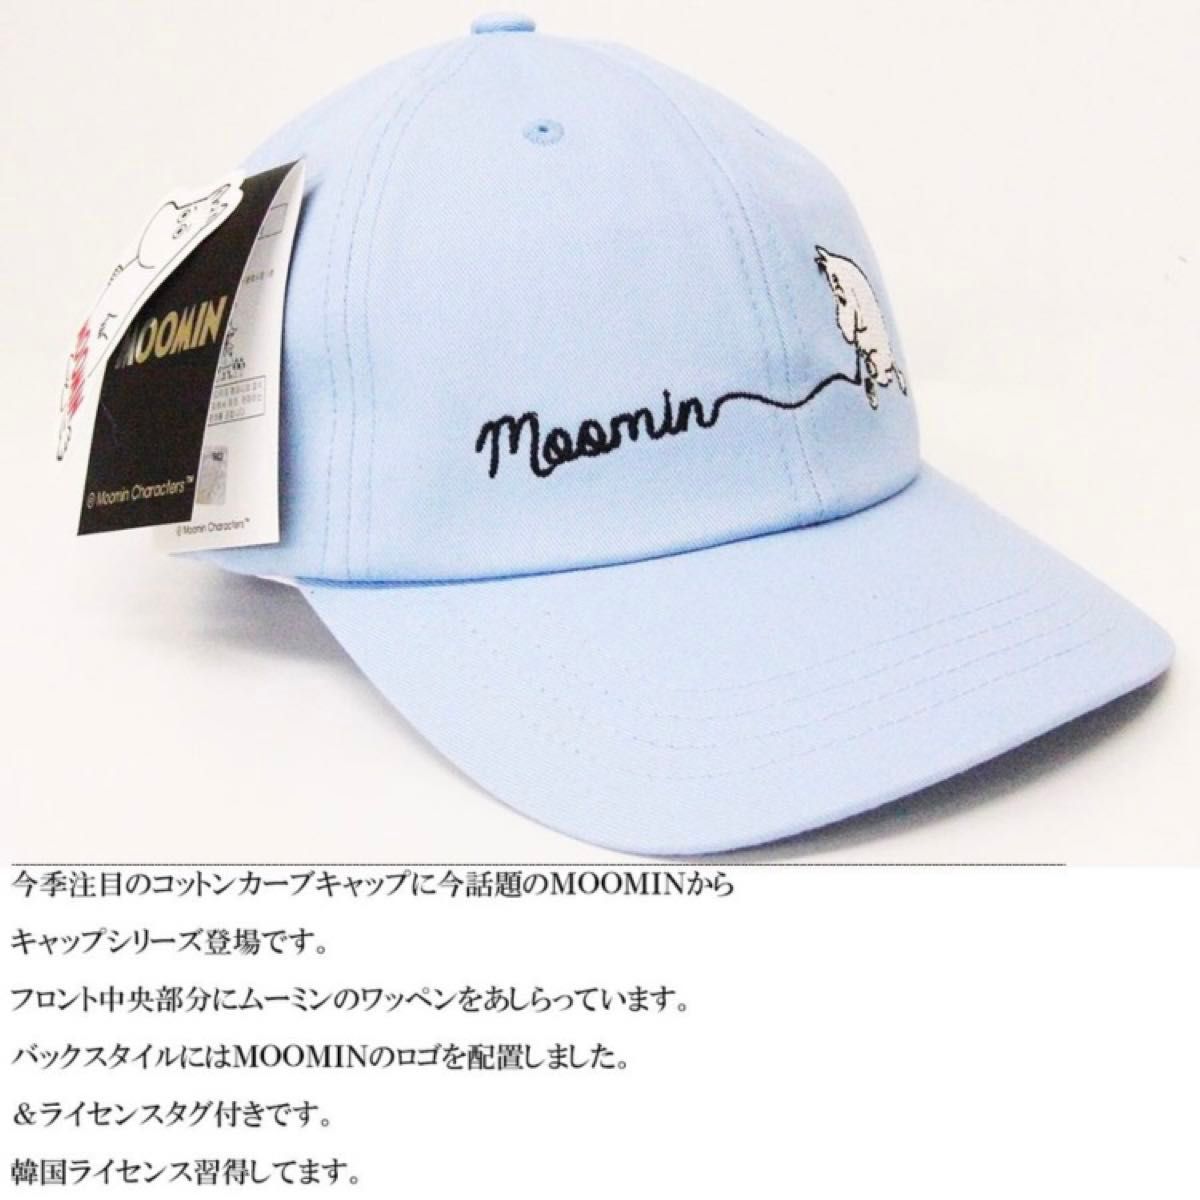 新品 ☆ MOOMIN ムーミンコラボ 刺繍入り キャップ (ホワイト・ブルー・ピンクから一色お選びください)